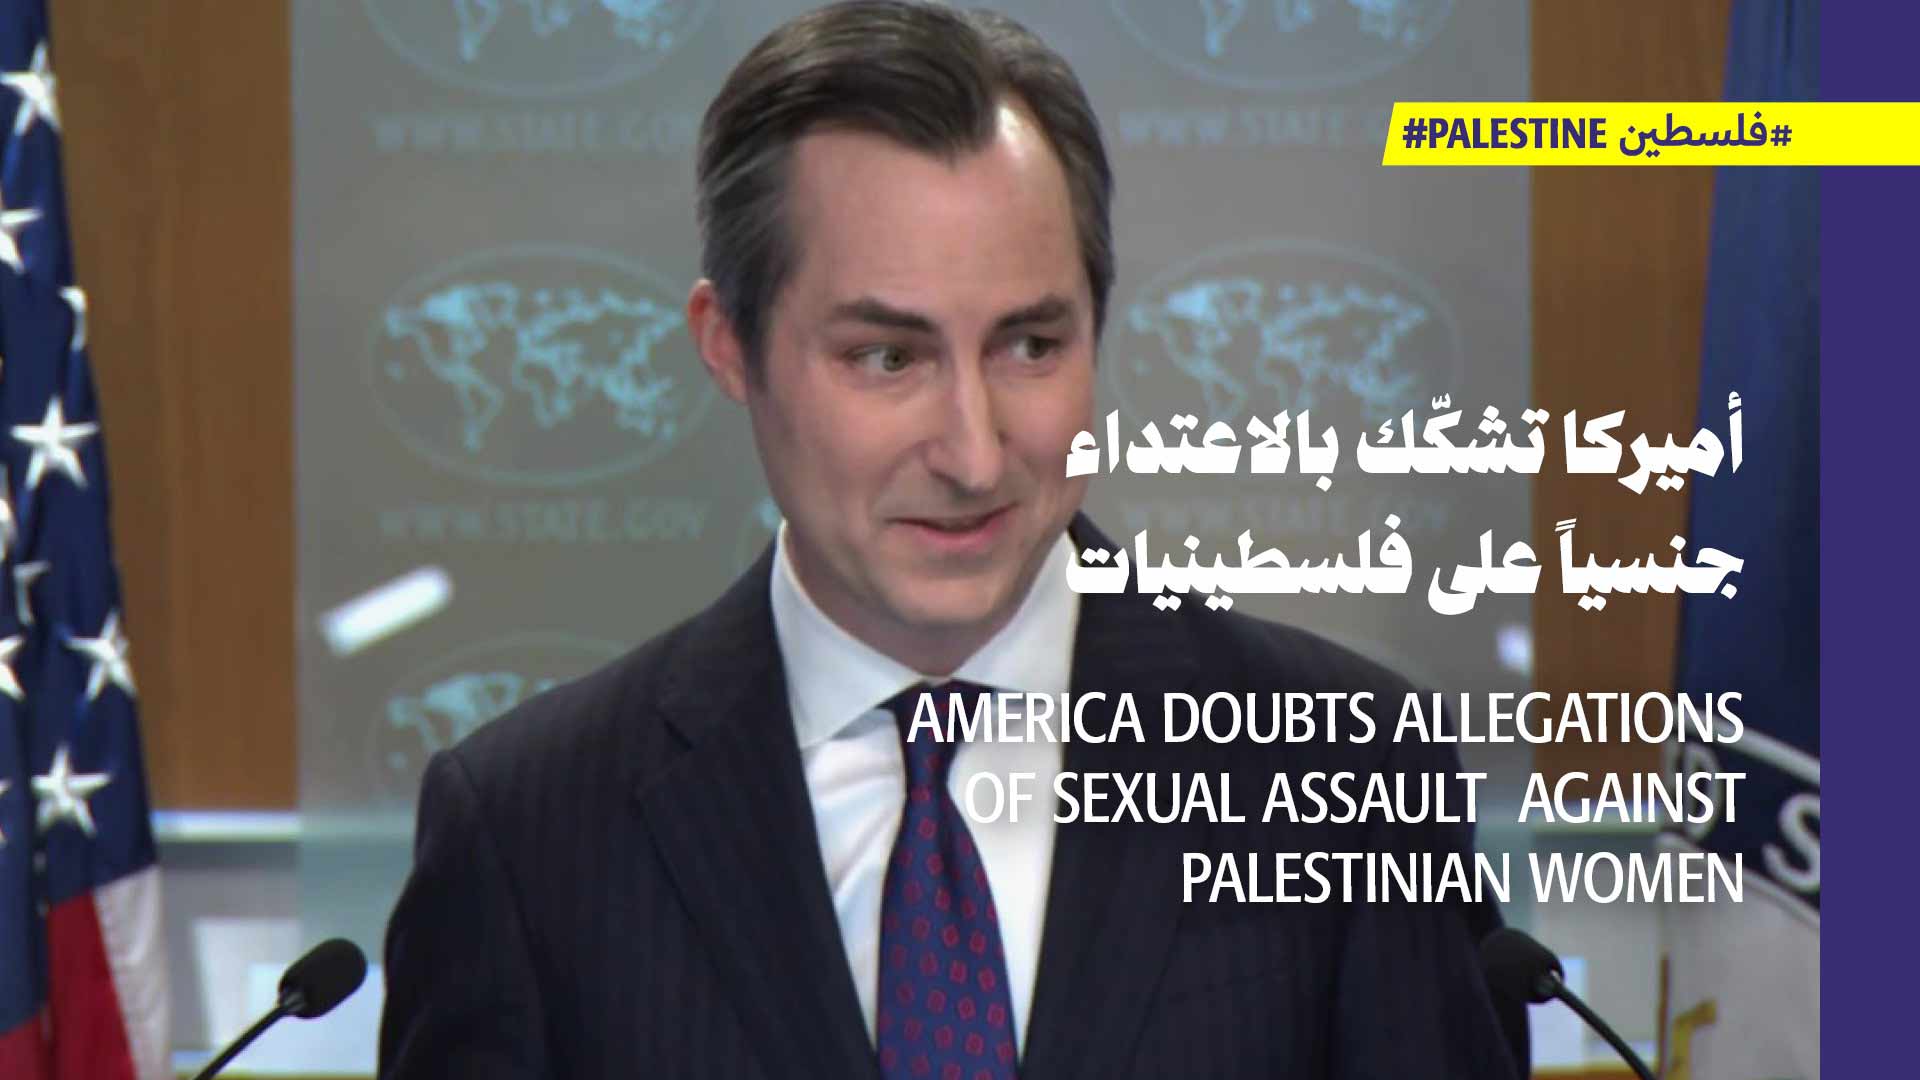 الخارجية الأميركية لا تثق بتقرير الأمم المتّحدة عن الاعتداءات الجنسيّة على الفلسطينيّات